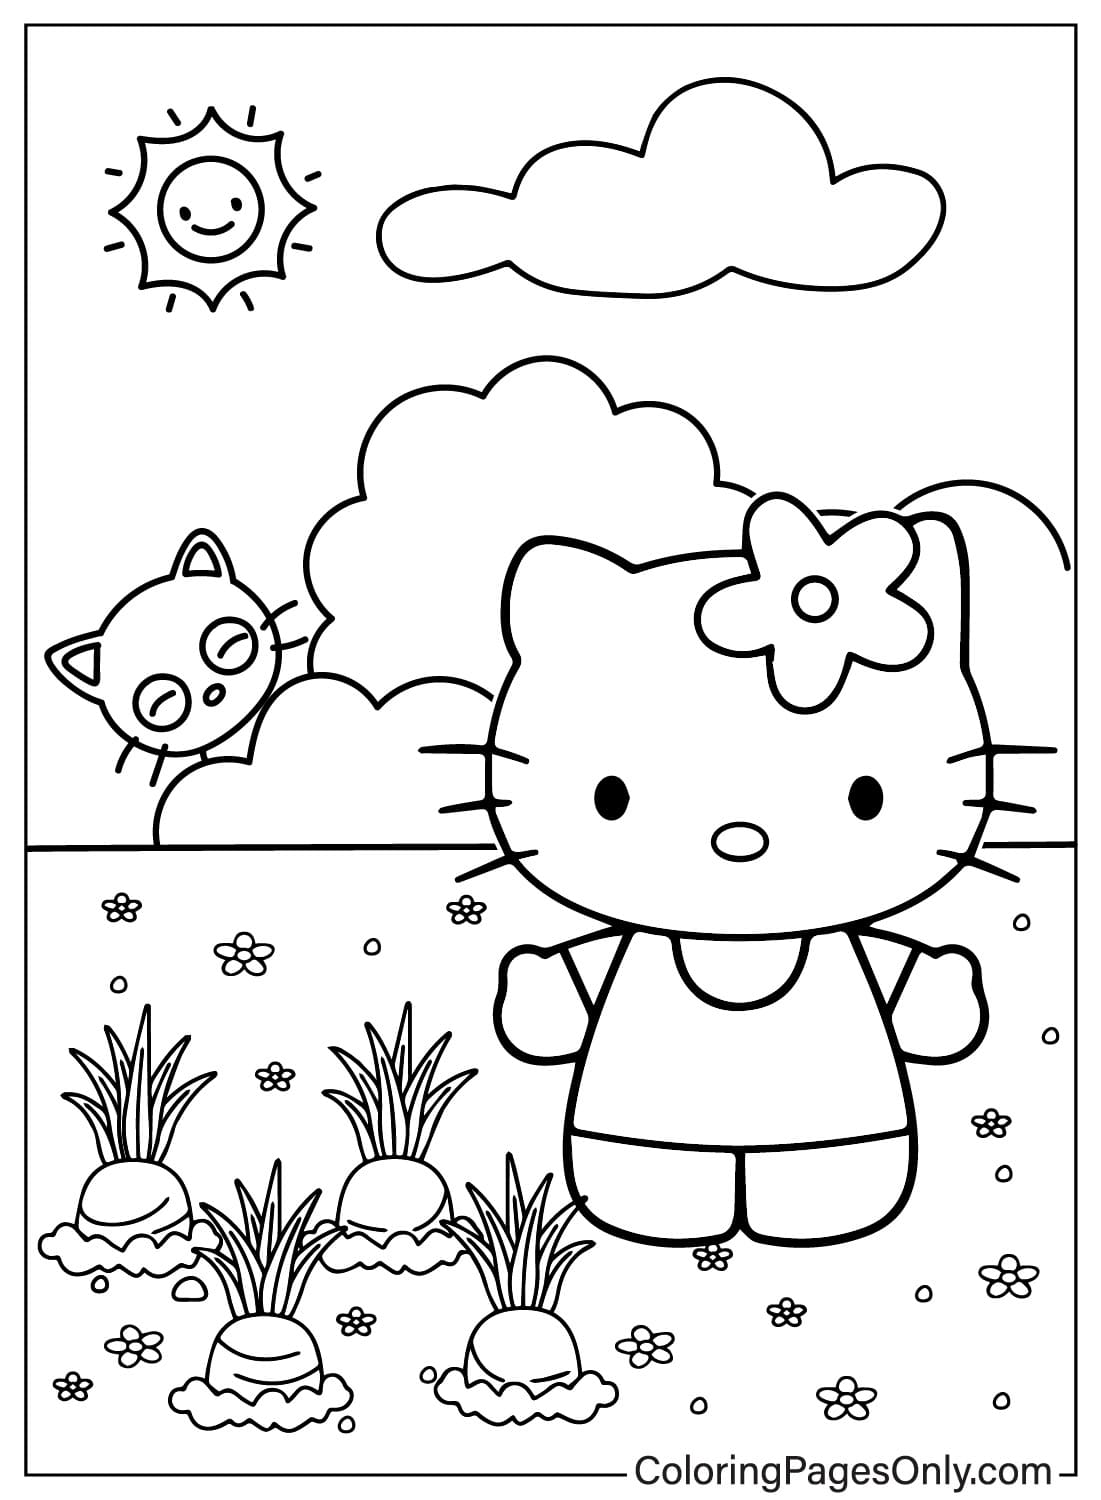 Coloriage Chococat et Hello Kitty à colorier